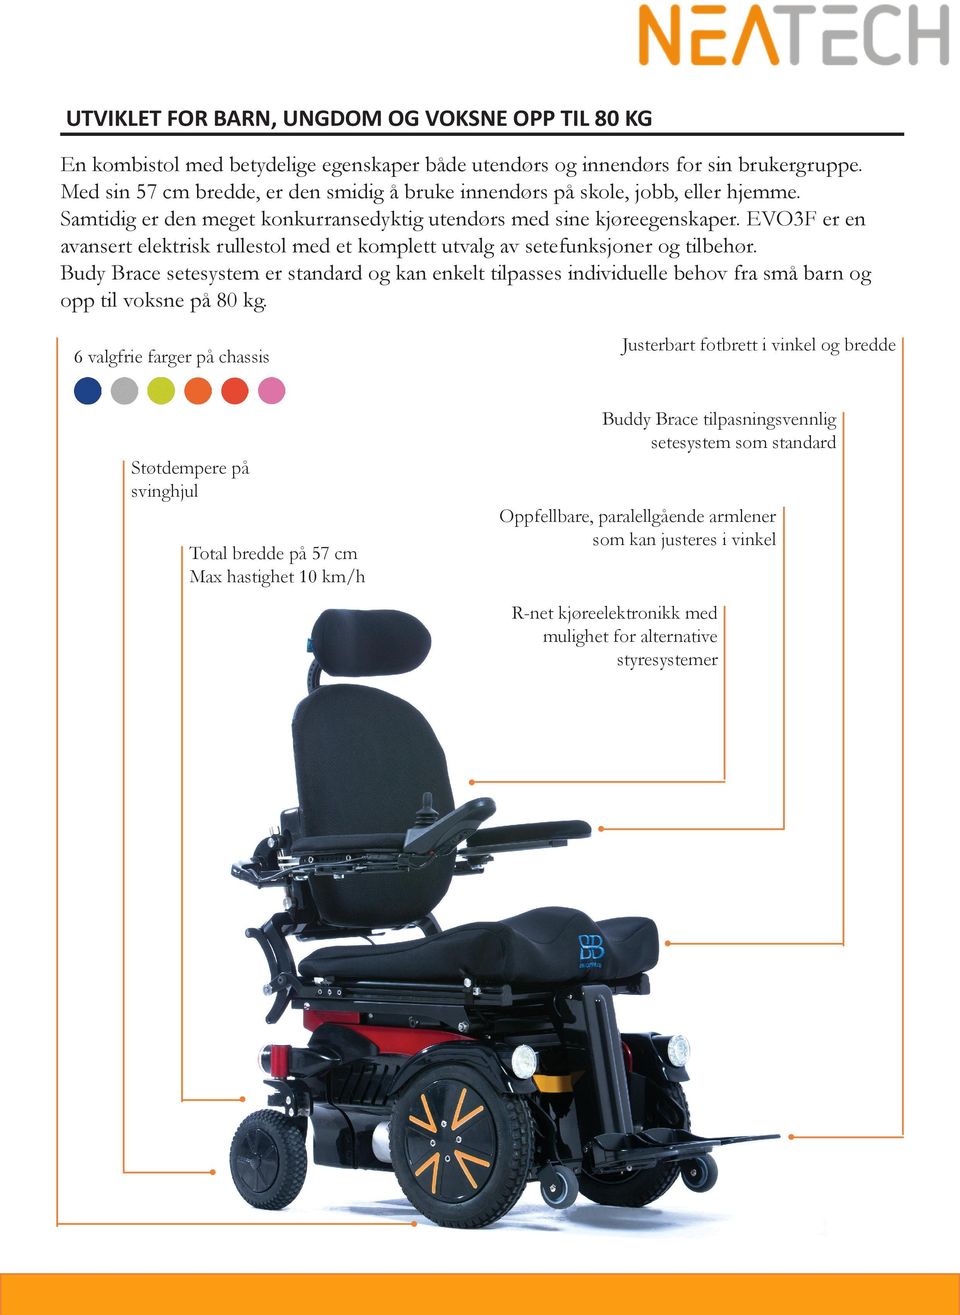 EVO3F er en avansert elektrisk rullestol med et komplett utvalg av setefunksjoner og tilbehør.